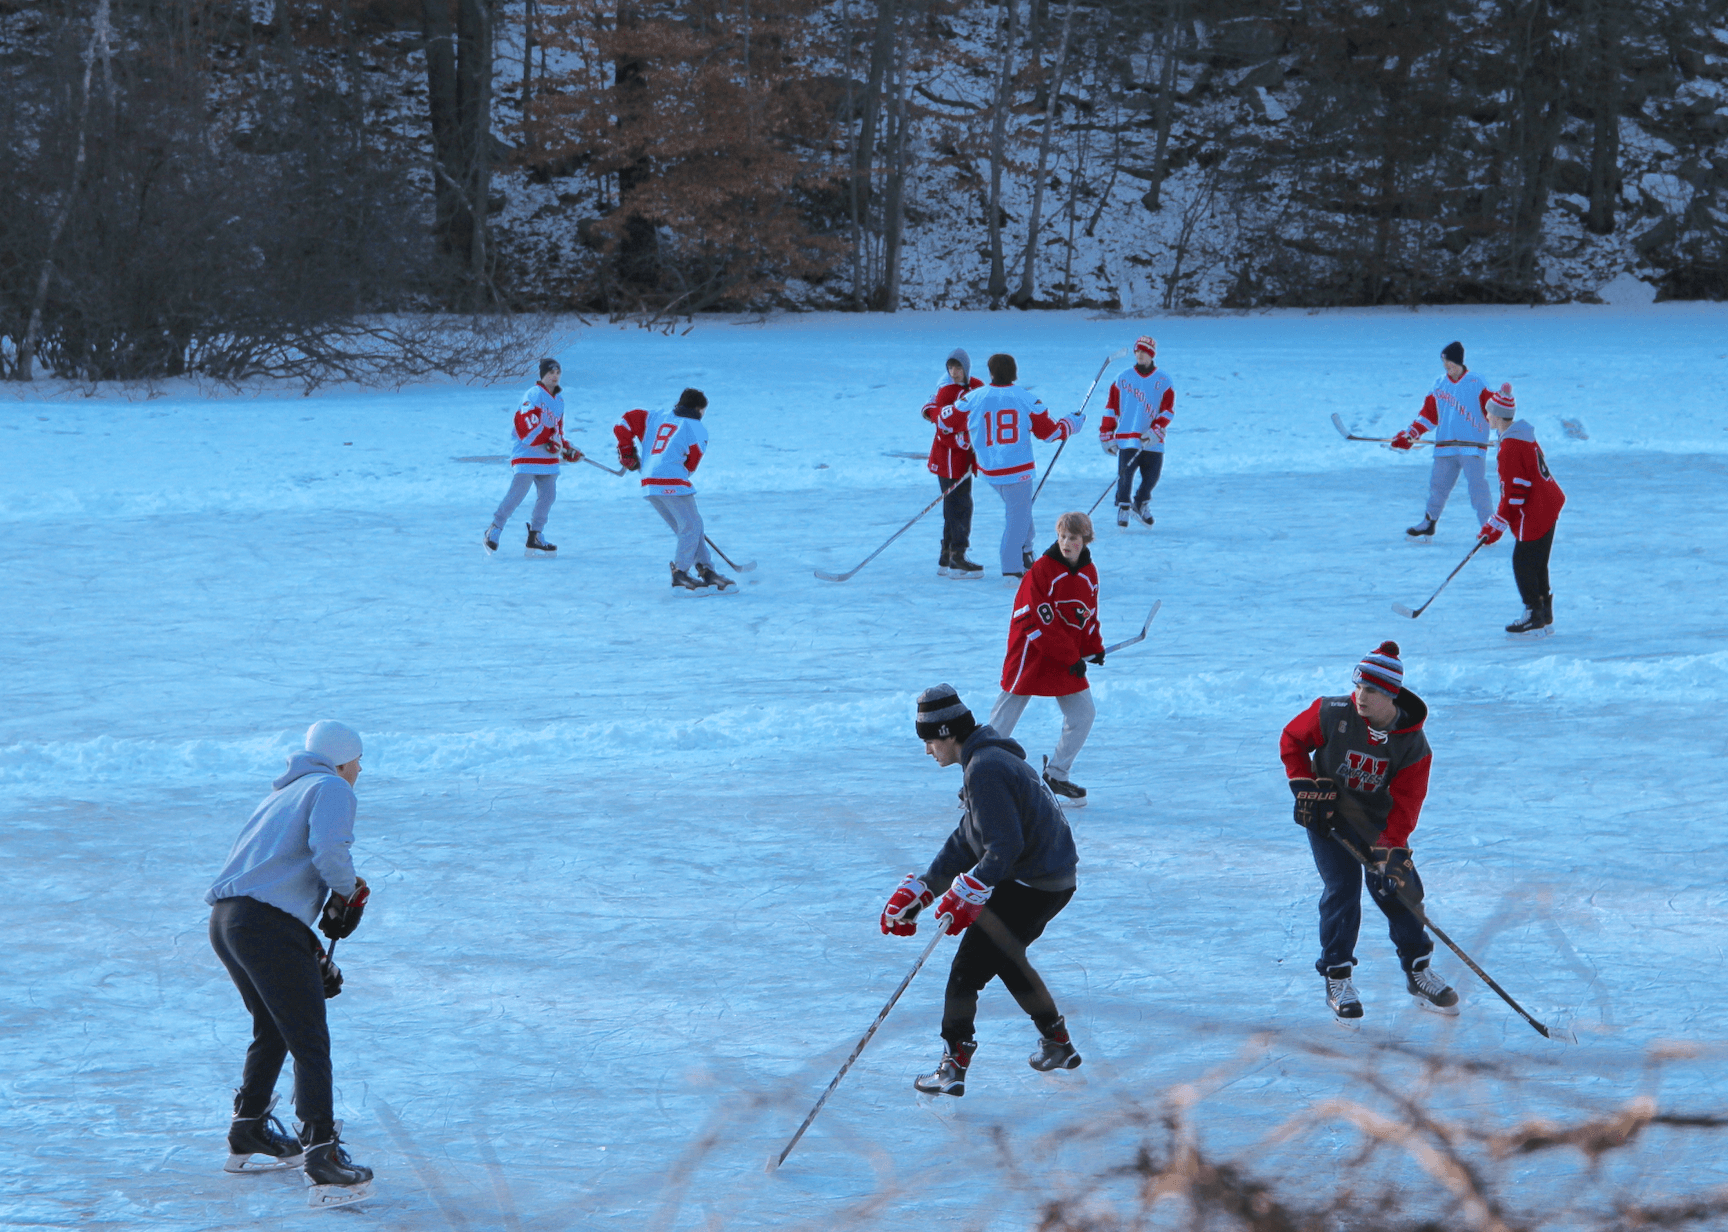 Skating on Pomerance Pond, Jan 1, 2018